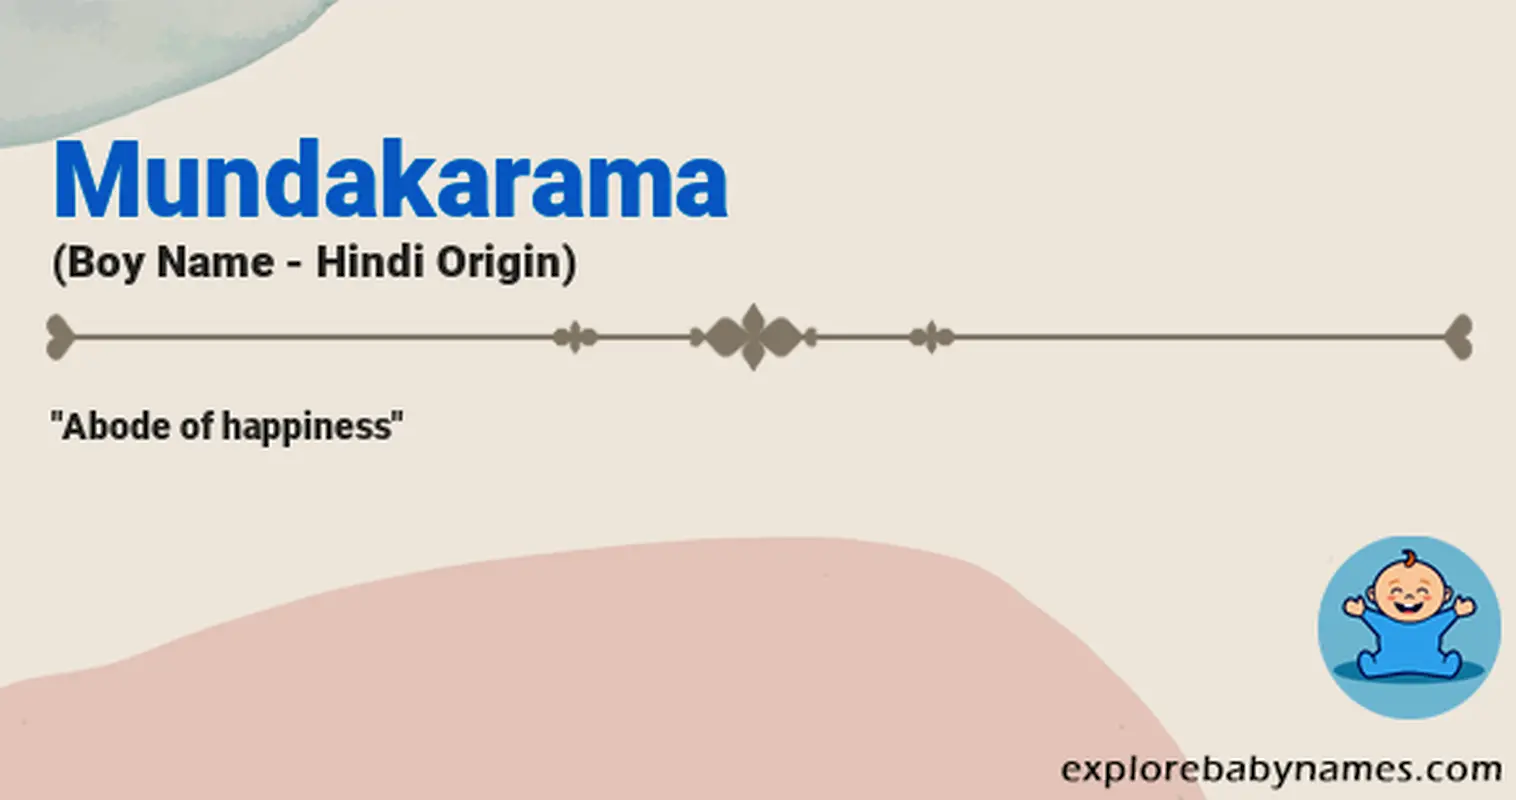 Meaning of Mundakarama